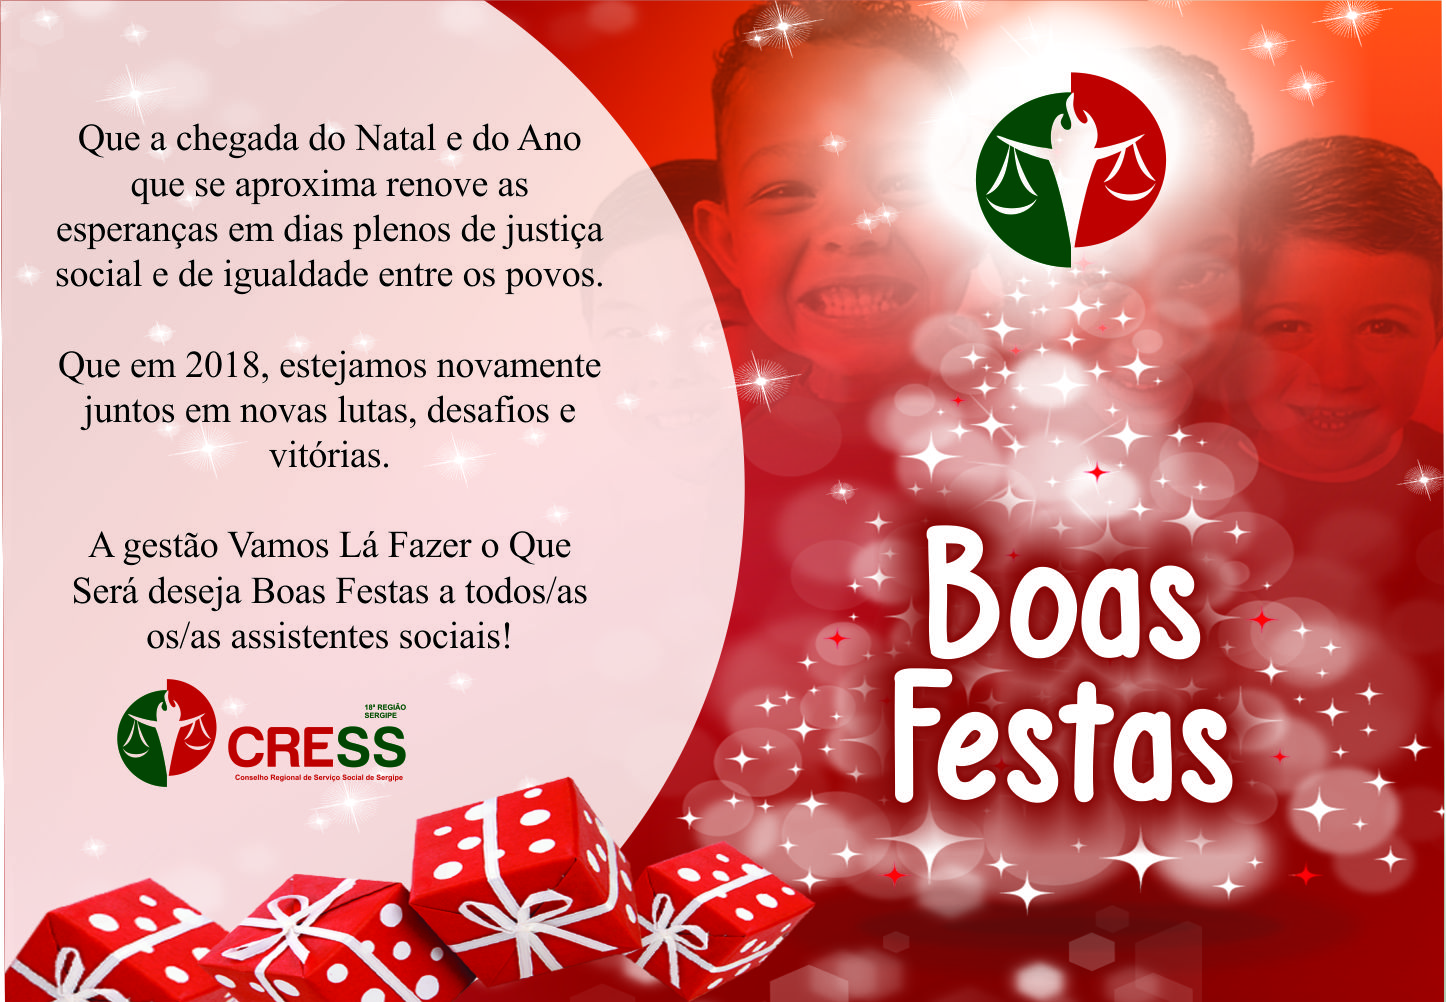 O CRESS Sergipe deseja a todos BOAS FESTAS!